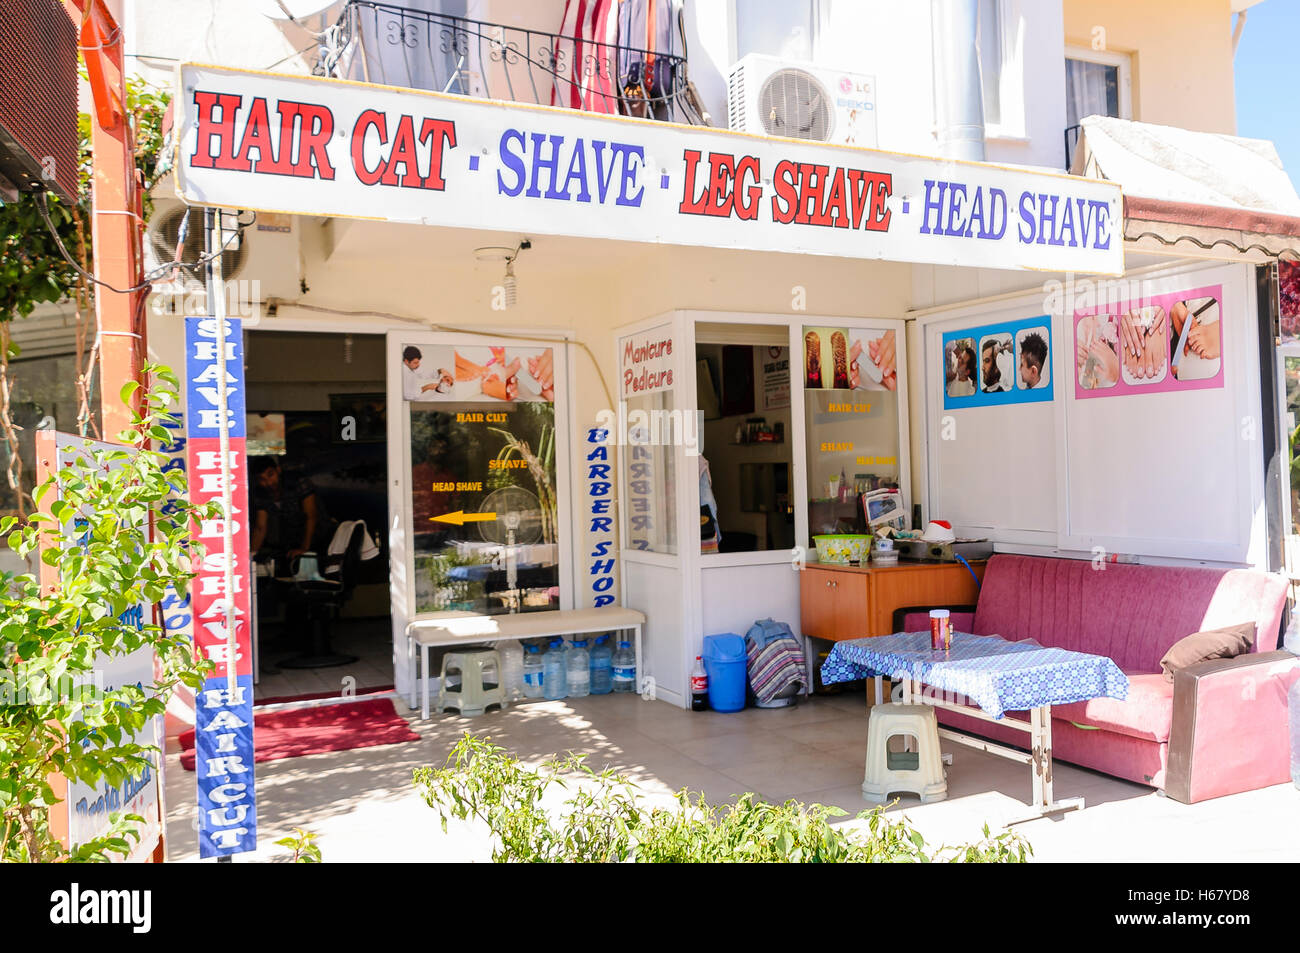 Les barbiers turc avec un panneau disant 'Hair Cat" au lieu de "couper les cheveux" erreur d'orthographe Banque D'Images